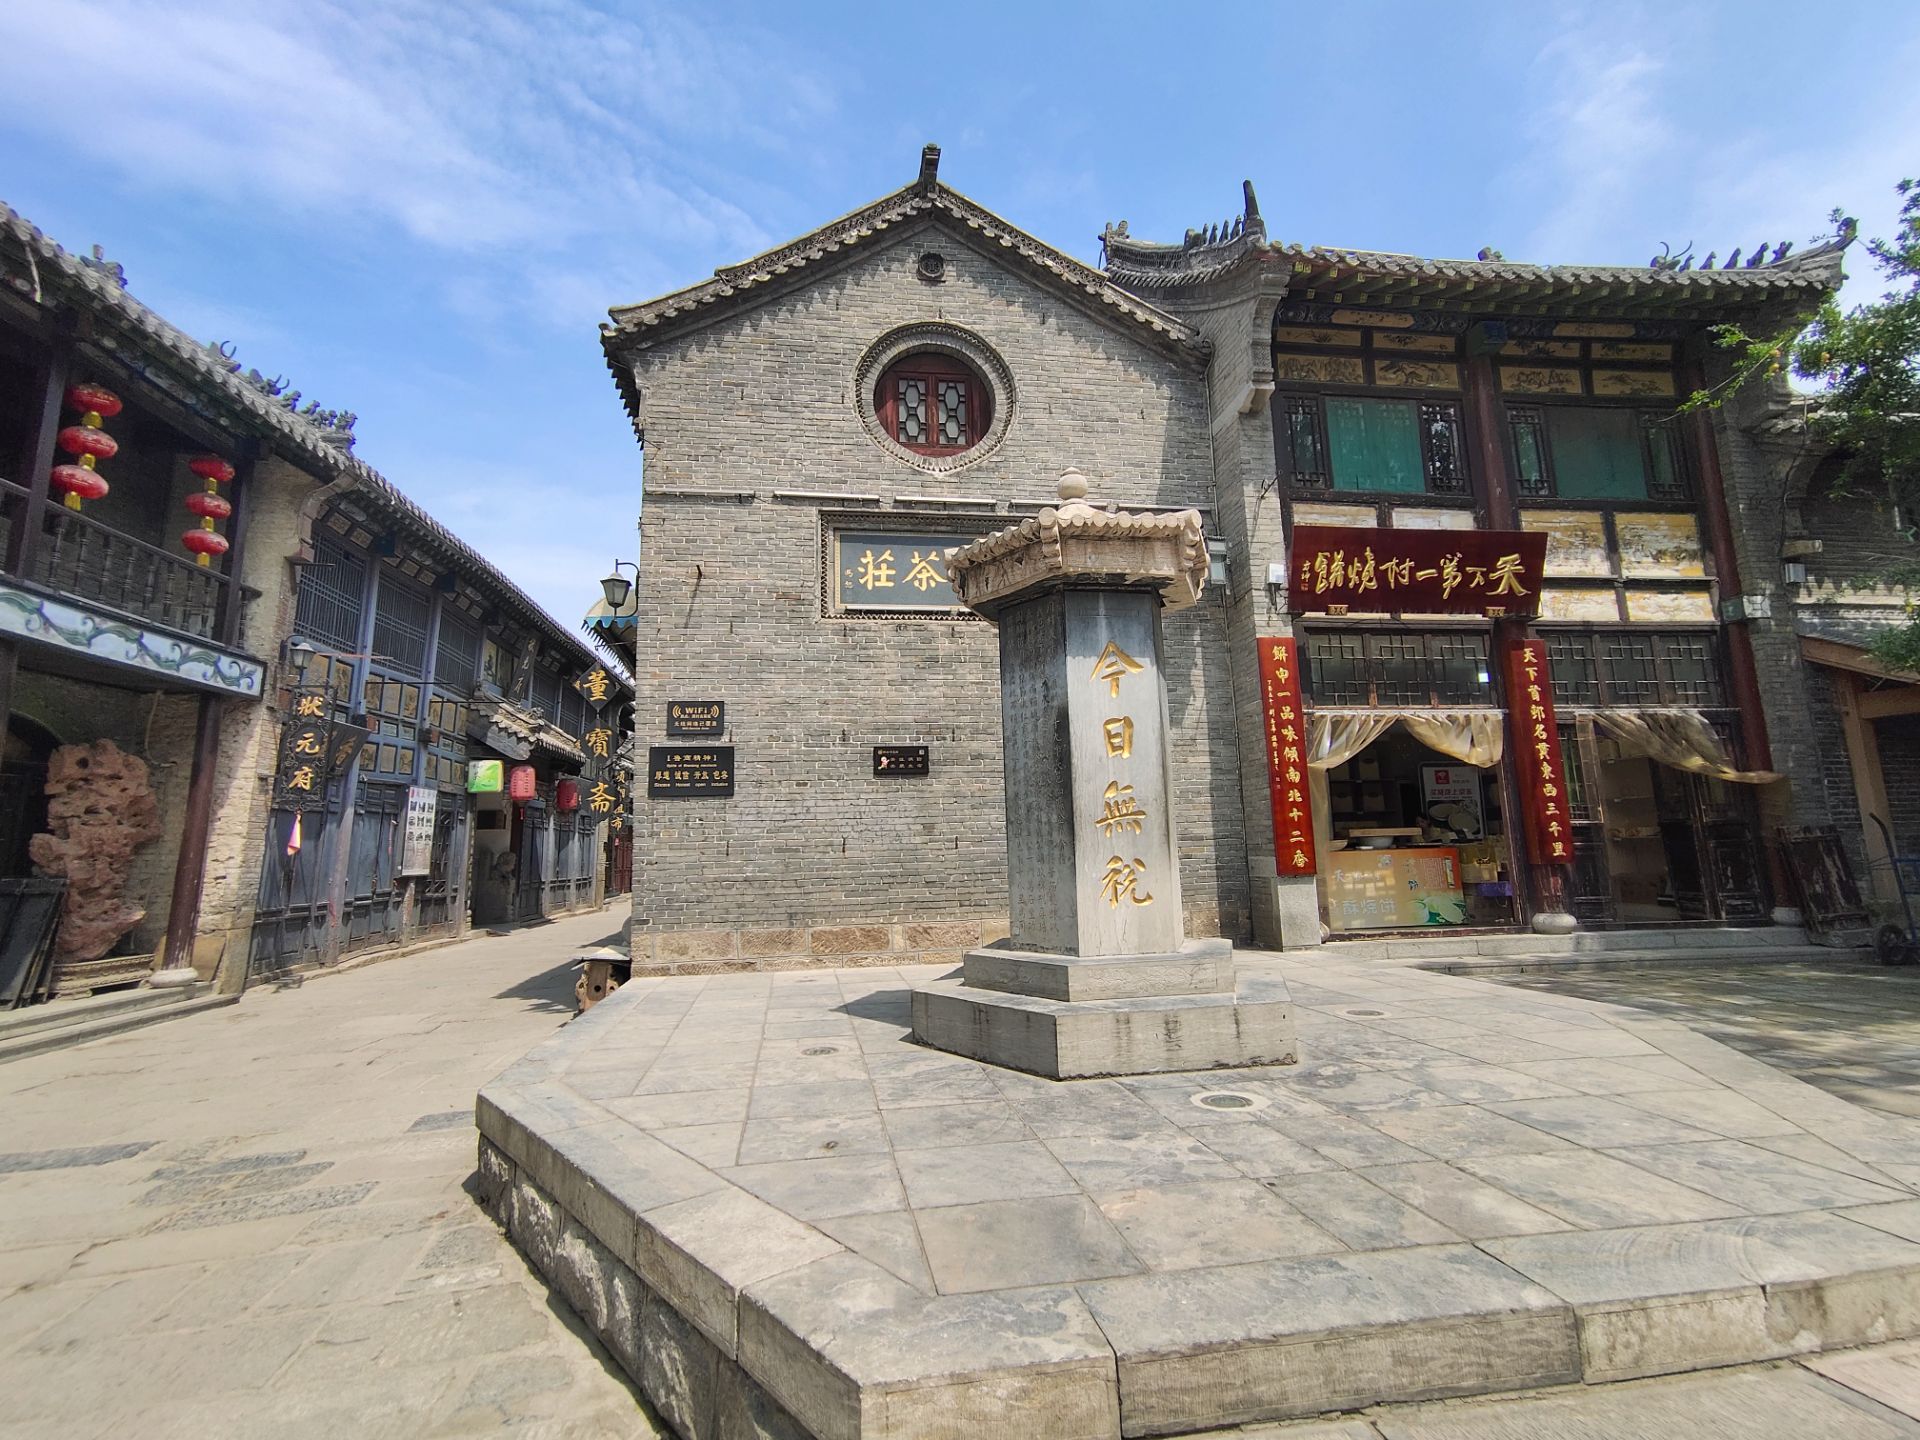 【携程攻略】淄博周村古商城景点,晴天的时候还是挺美丽的,可以在人少